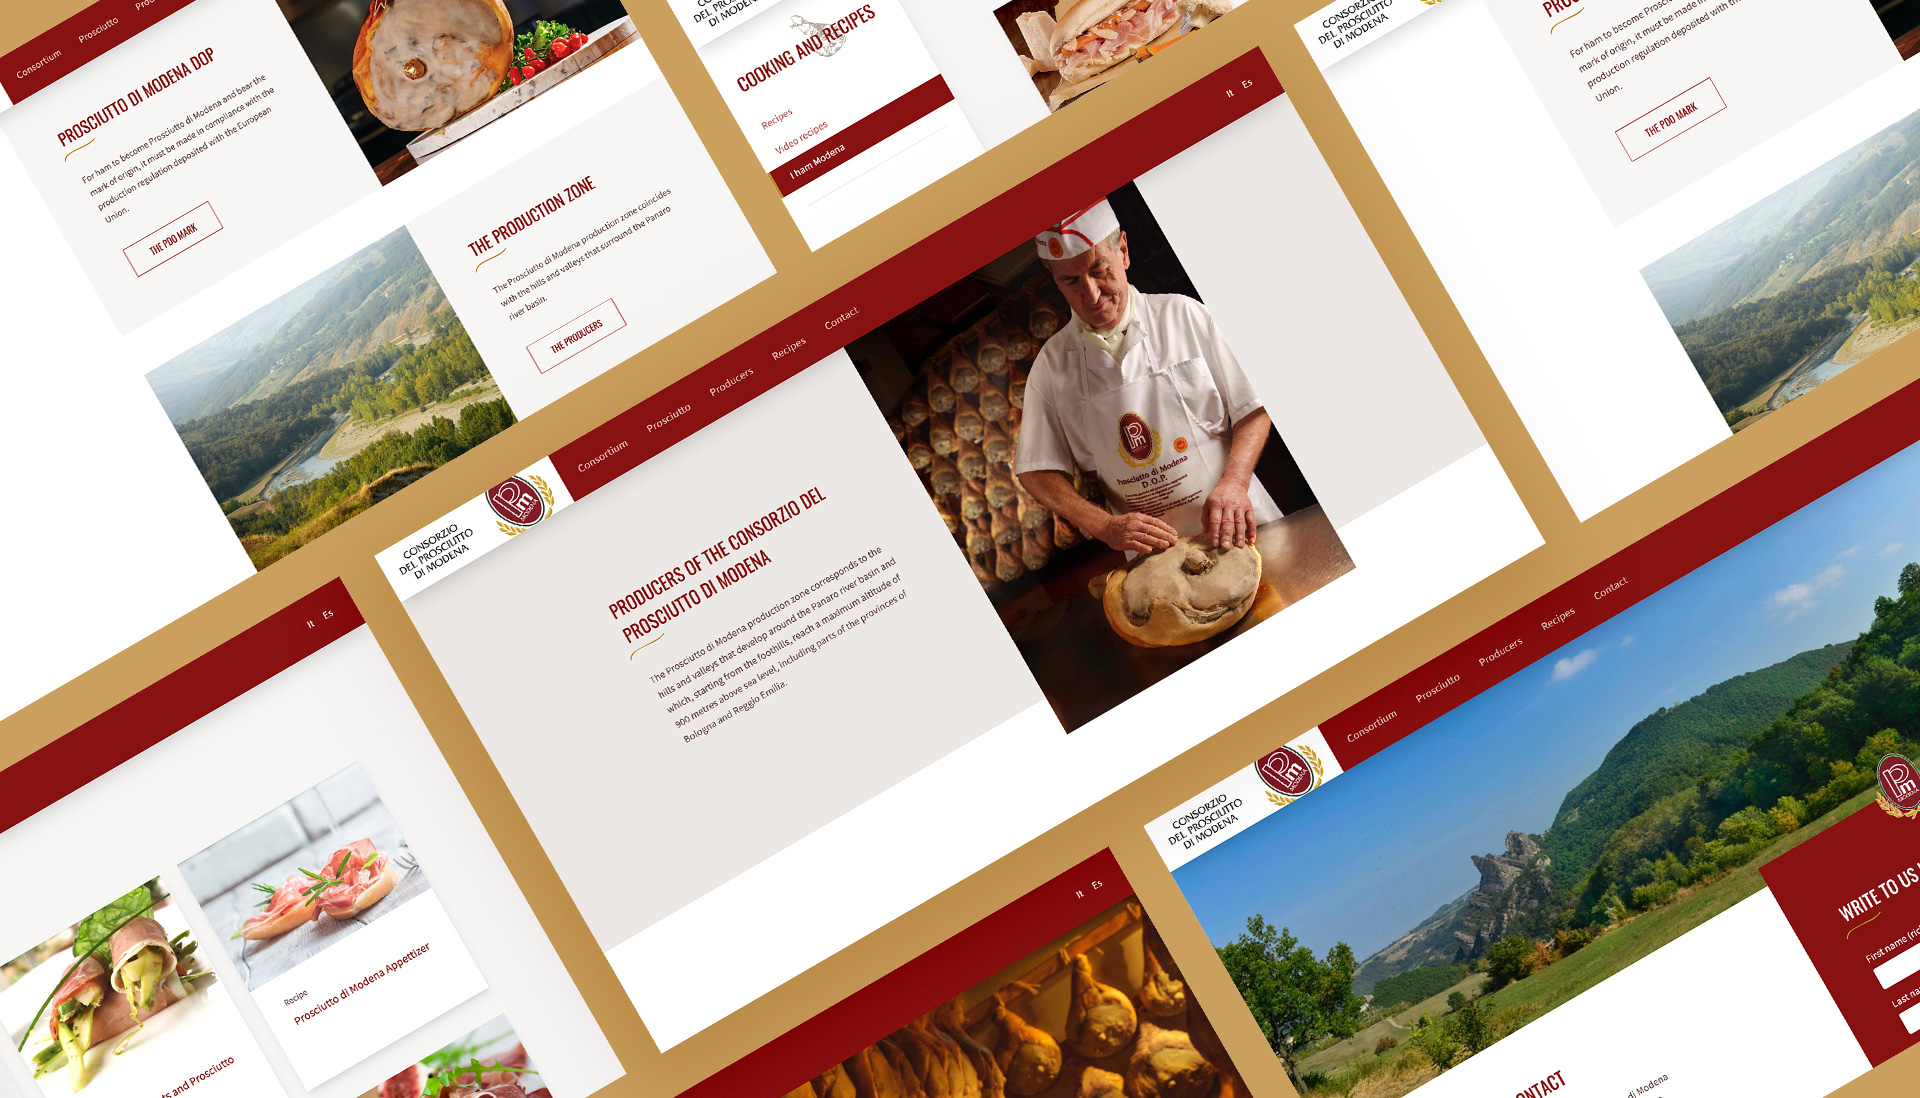 Altre pagine del nuovo sito del Consorzio del prosciutto di Modena